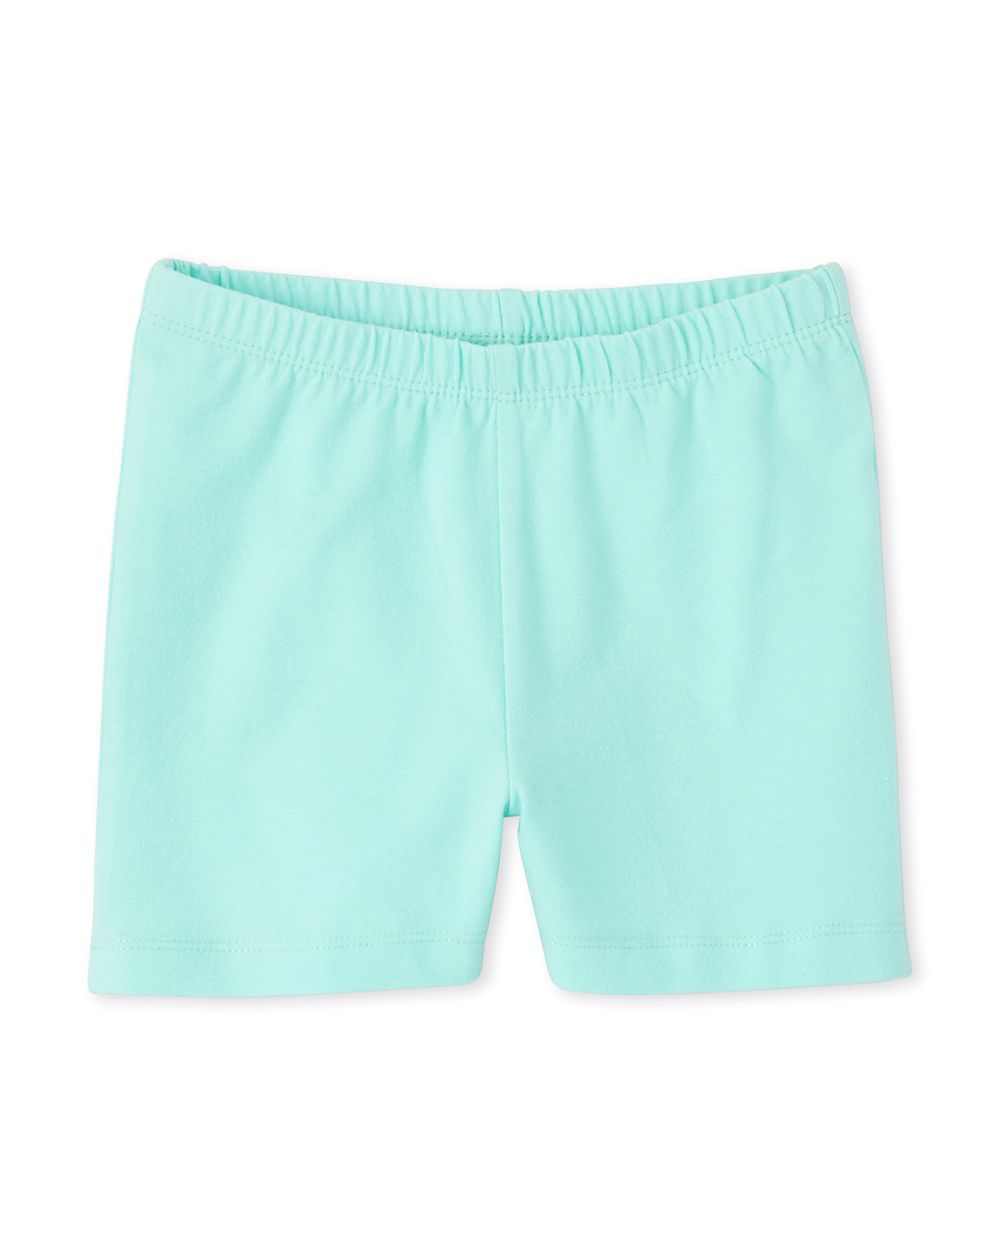 Girls Knit Cartwheel Shorts